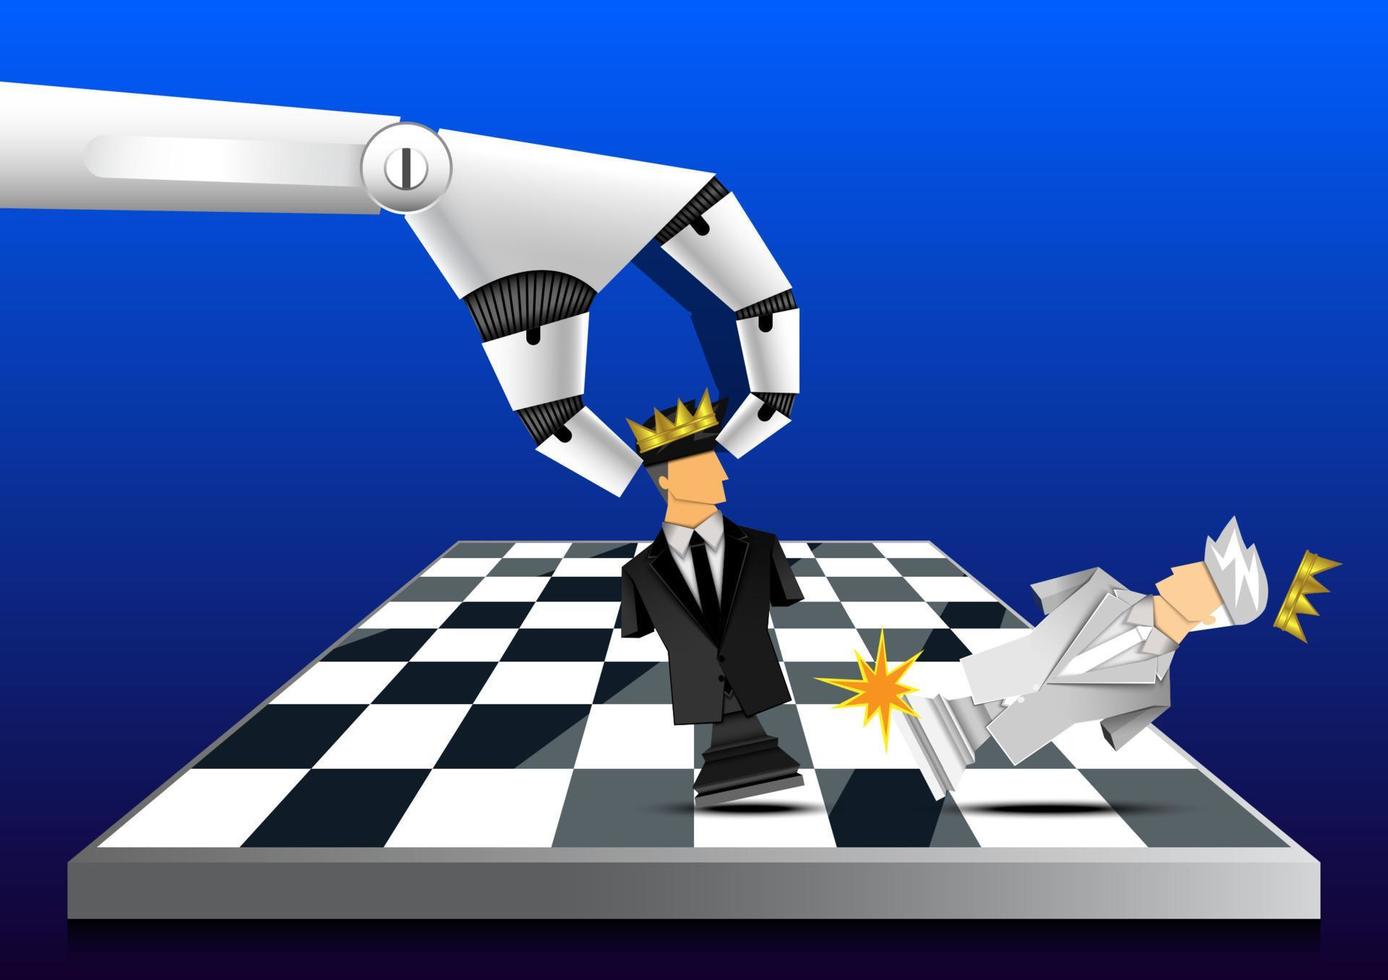 ai robot che controlla a mano il re degli scacchi, l'uomo d'affari, la leadership, la concorrenza, il vincitore, lo stile dell'illustratore vettoriale papercut